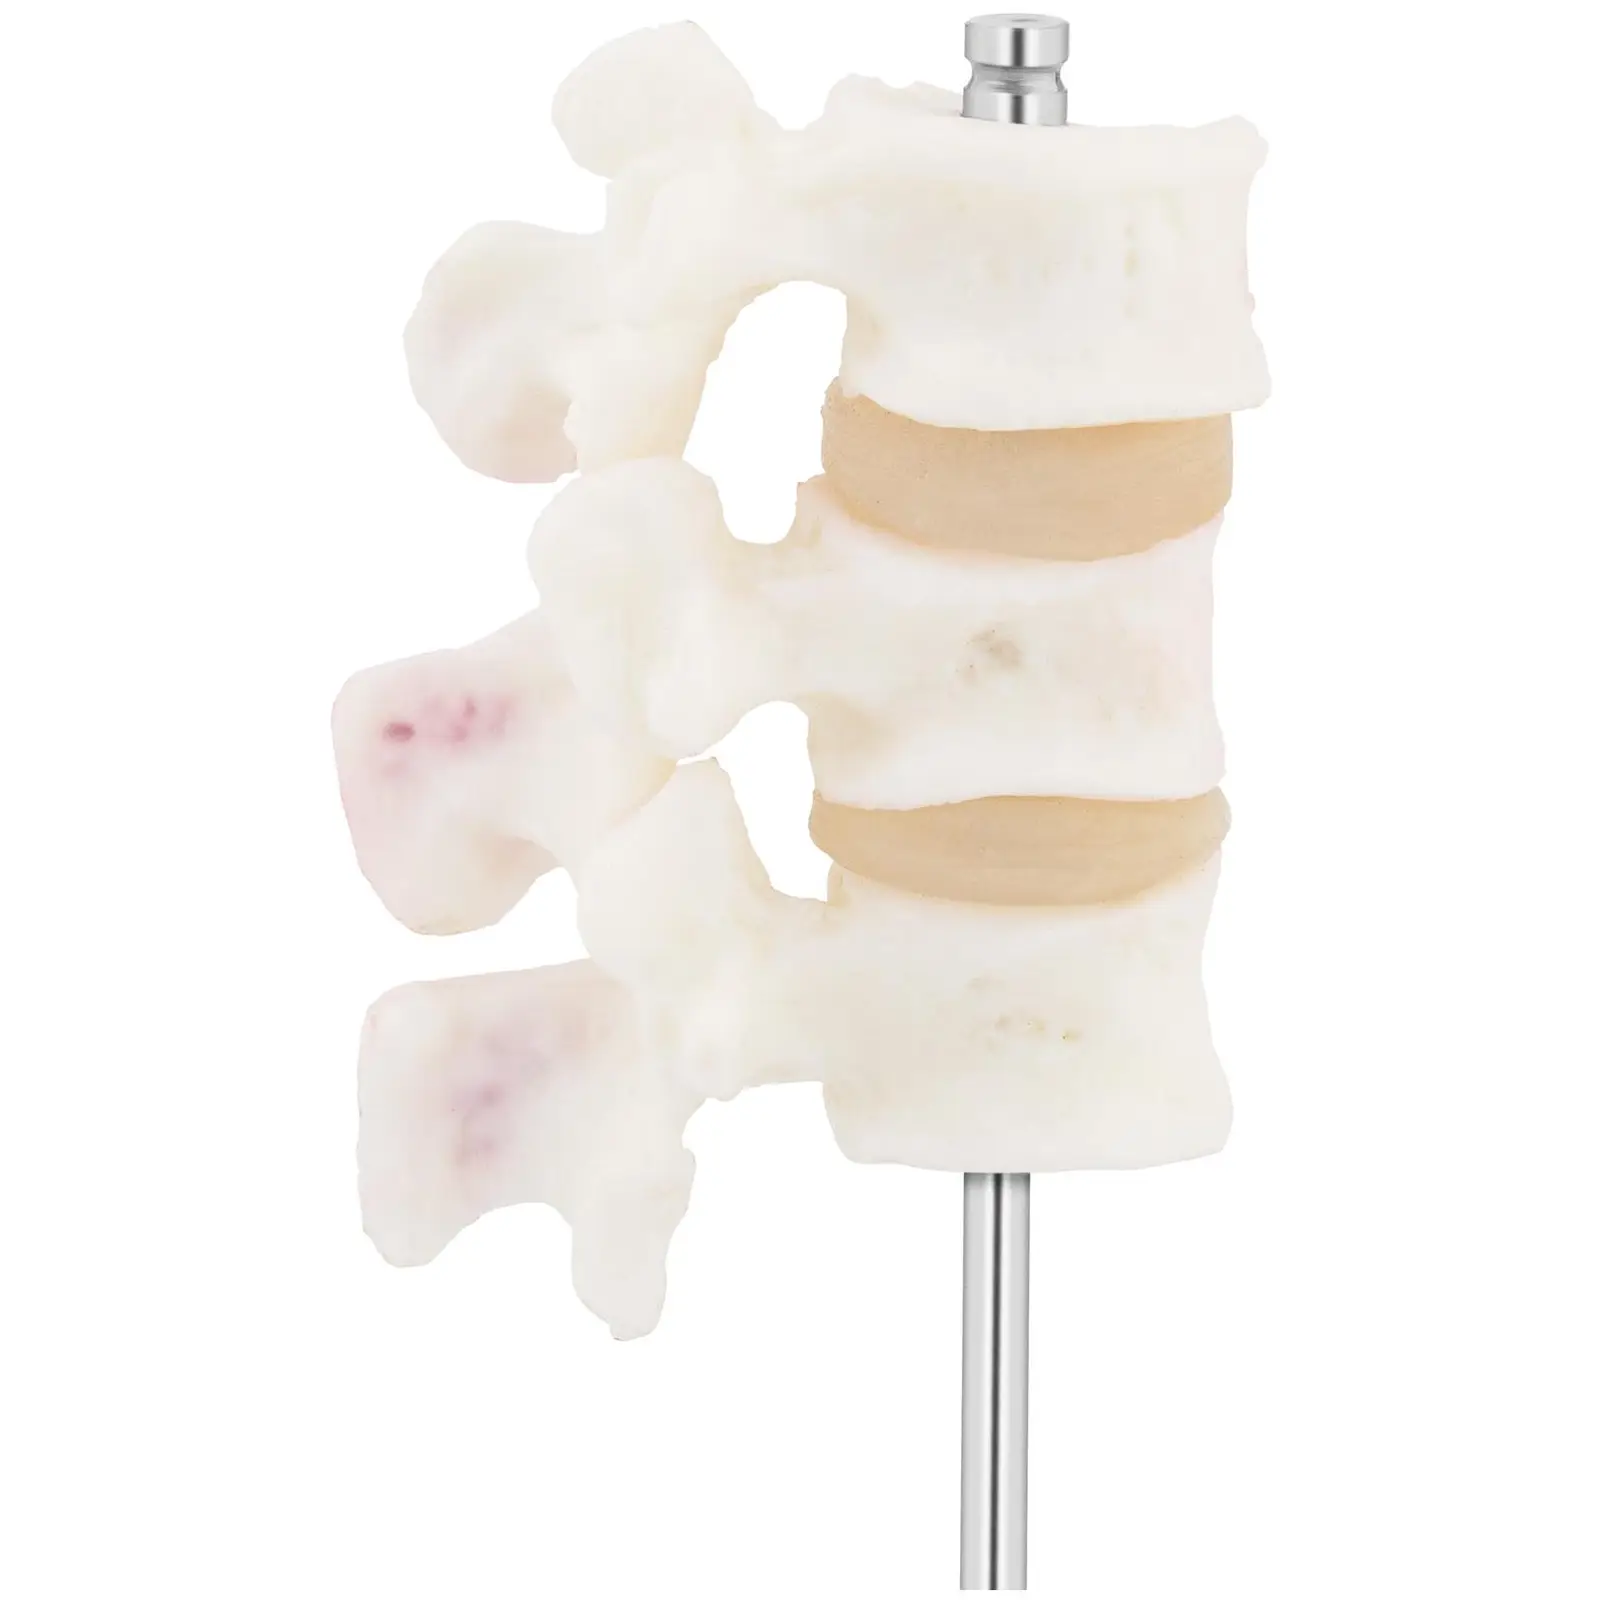 Lendenwirbel Modell - Osteoporose - koloriert